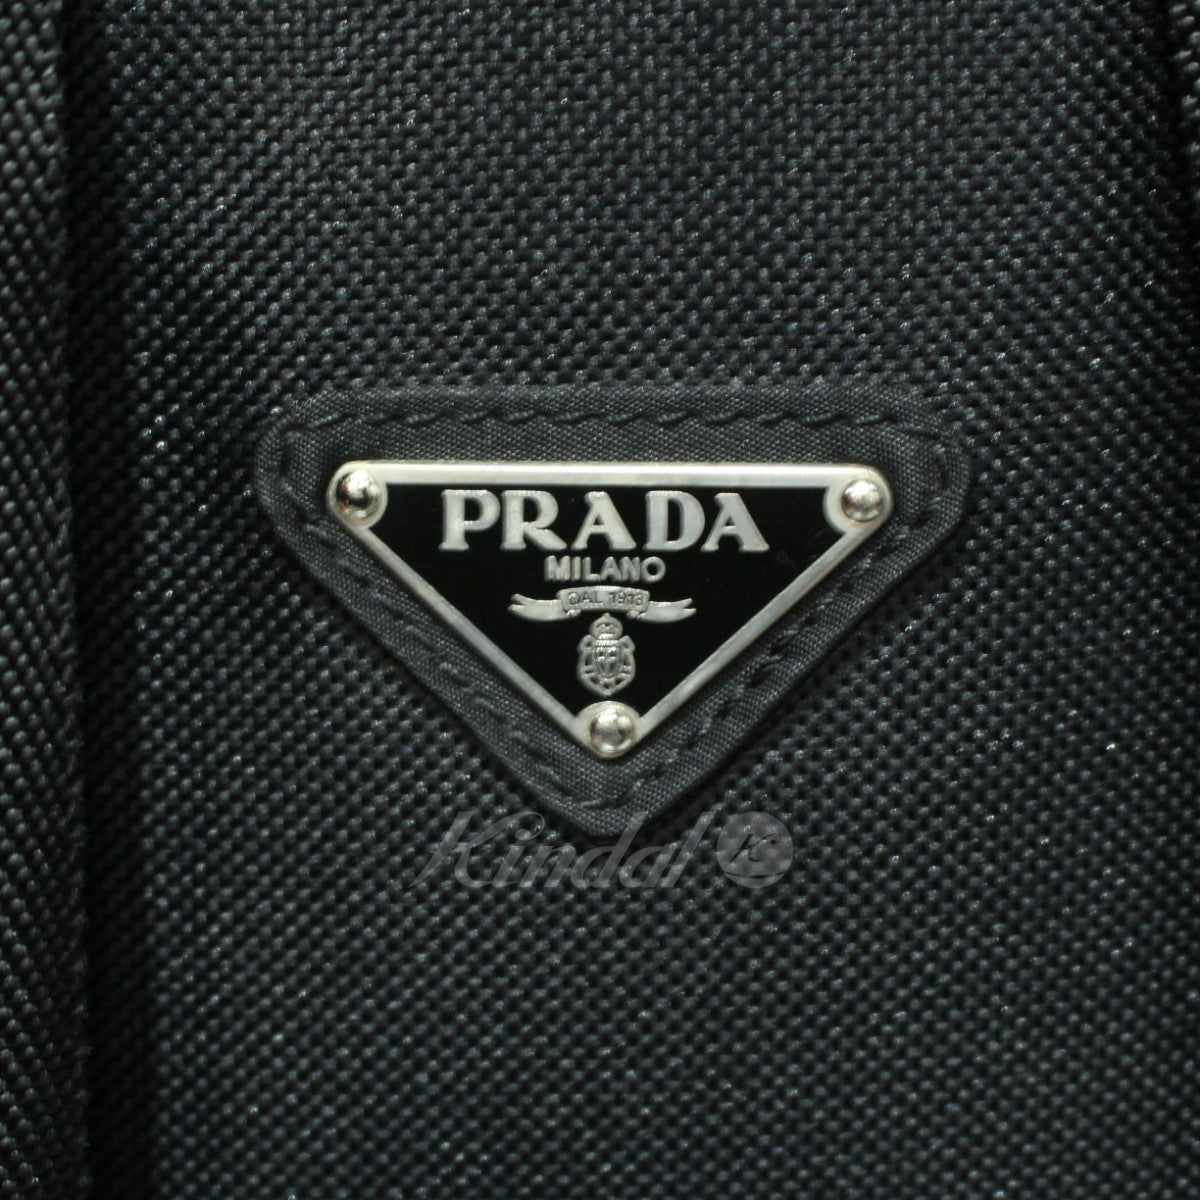 PRADA(プラダ) V135 ナイロンバックパック リュック バッグ ブラック 